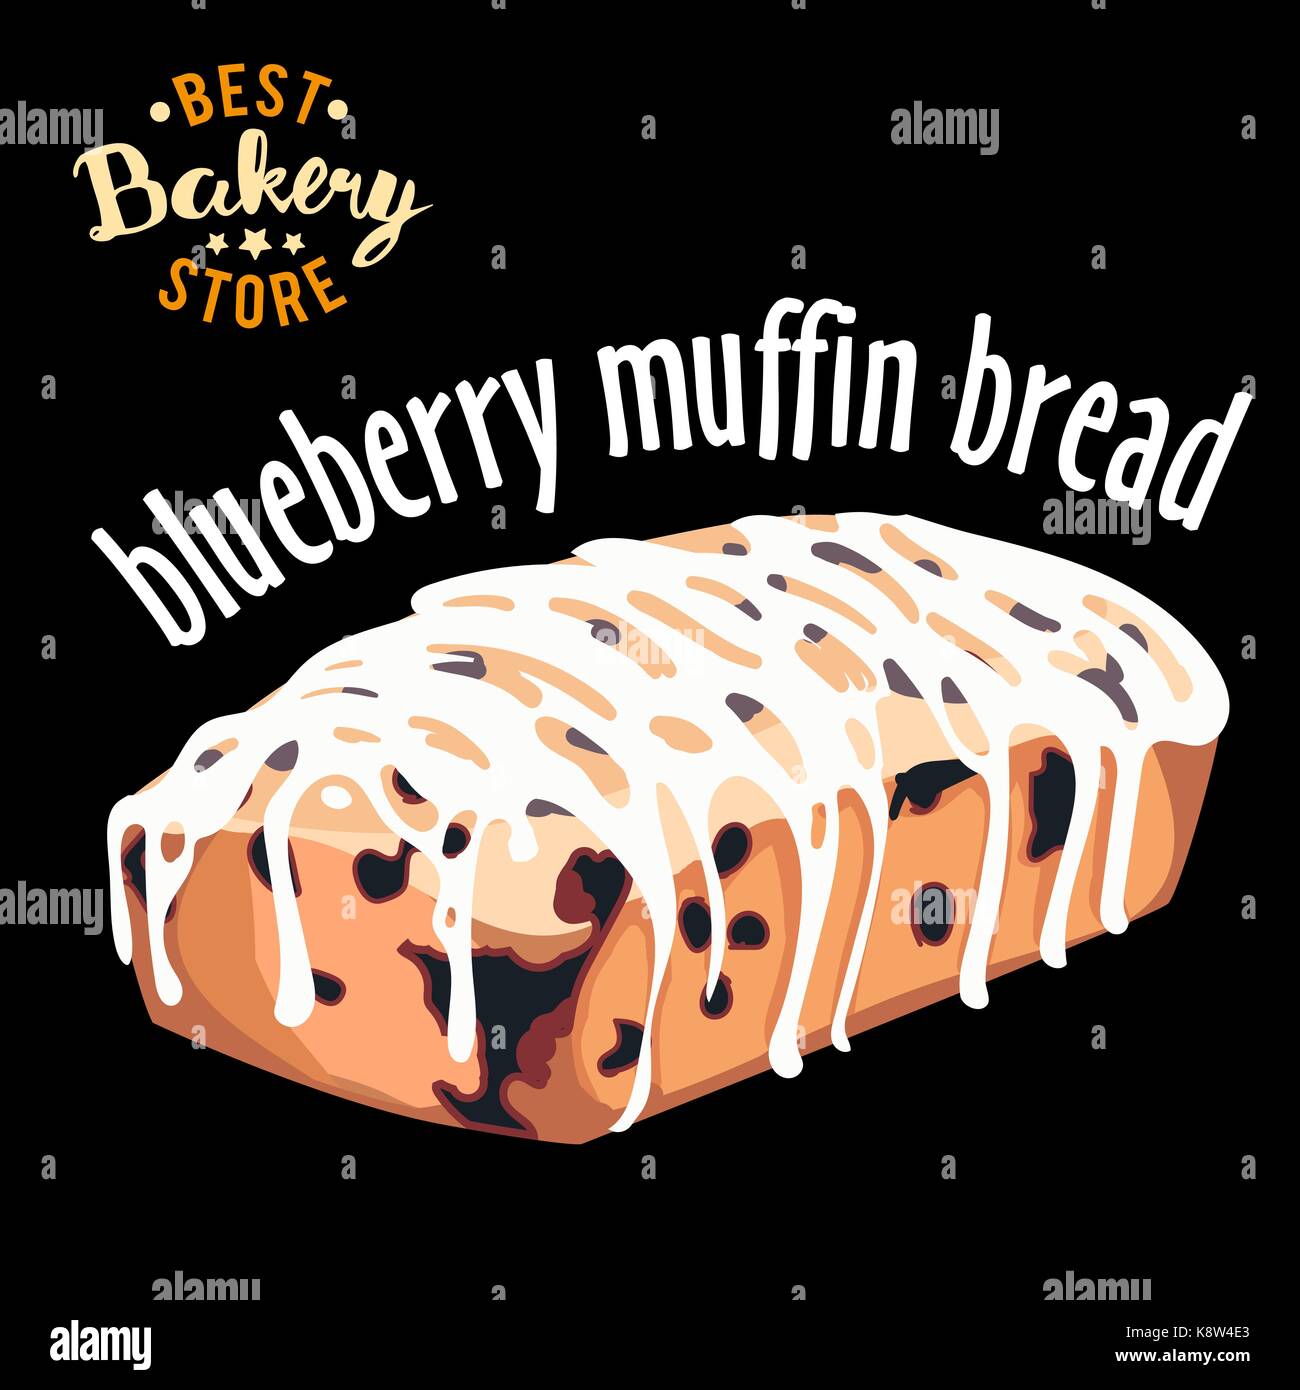 Blueberry Muffin Brot Vektor. Gebackenes Brot Produkt. Stock Vektor